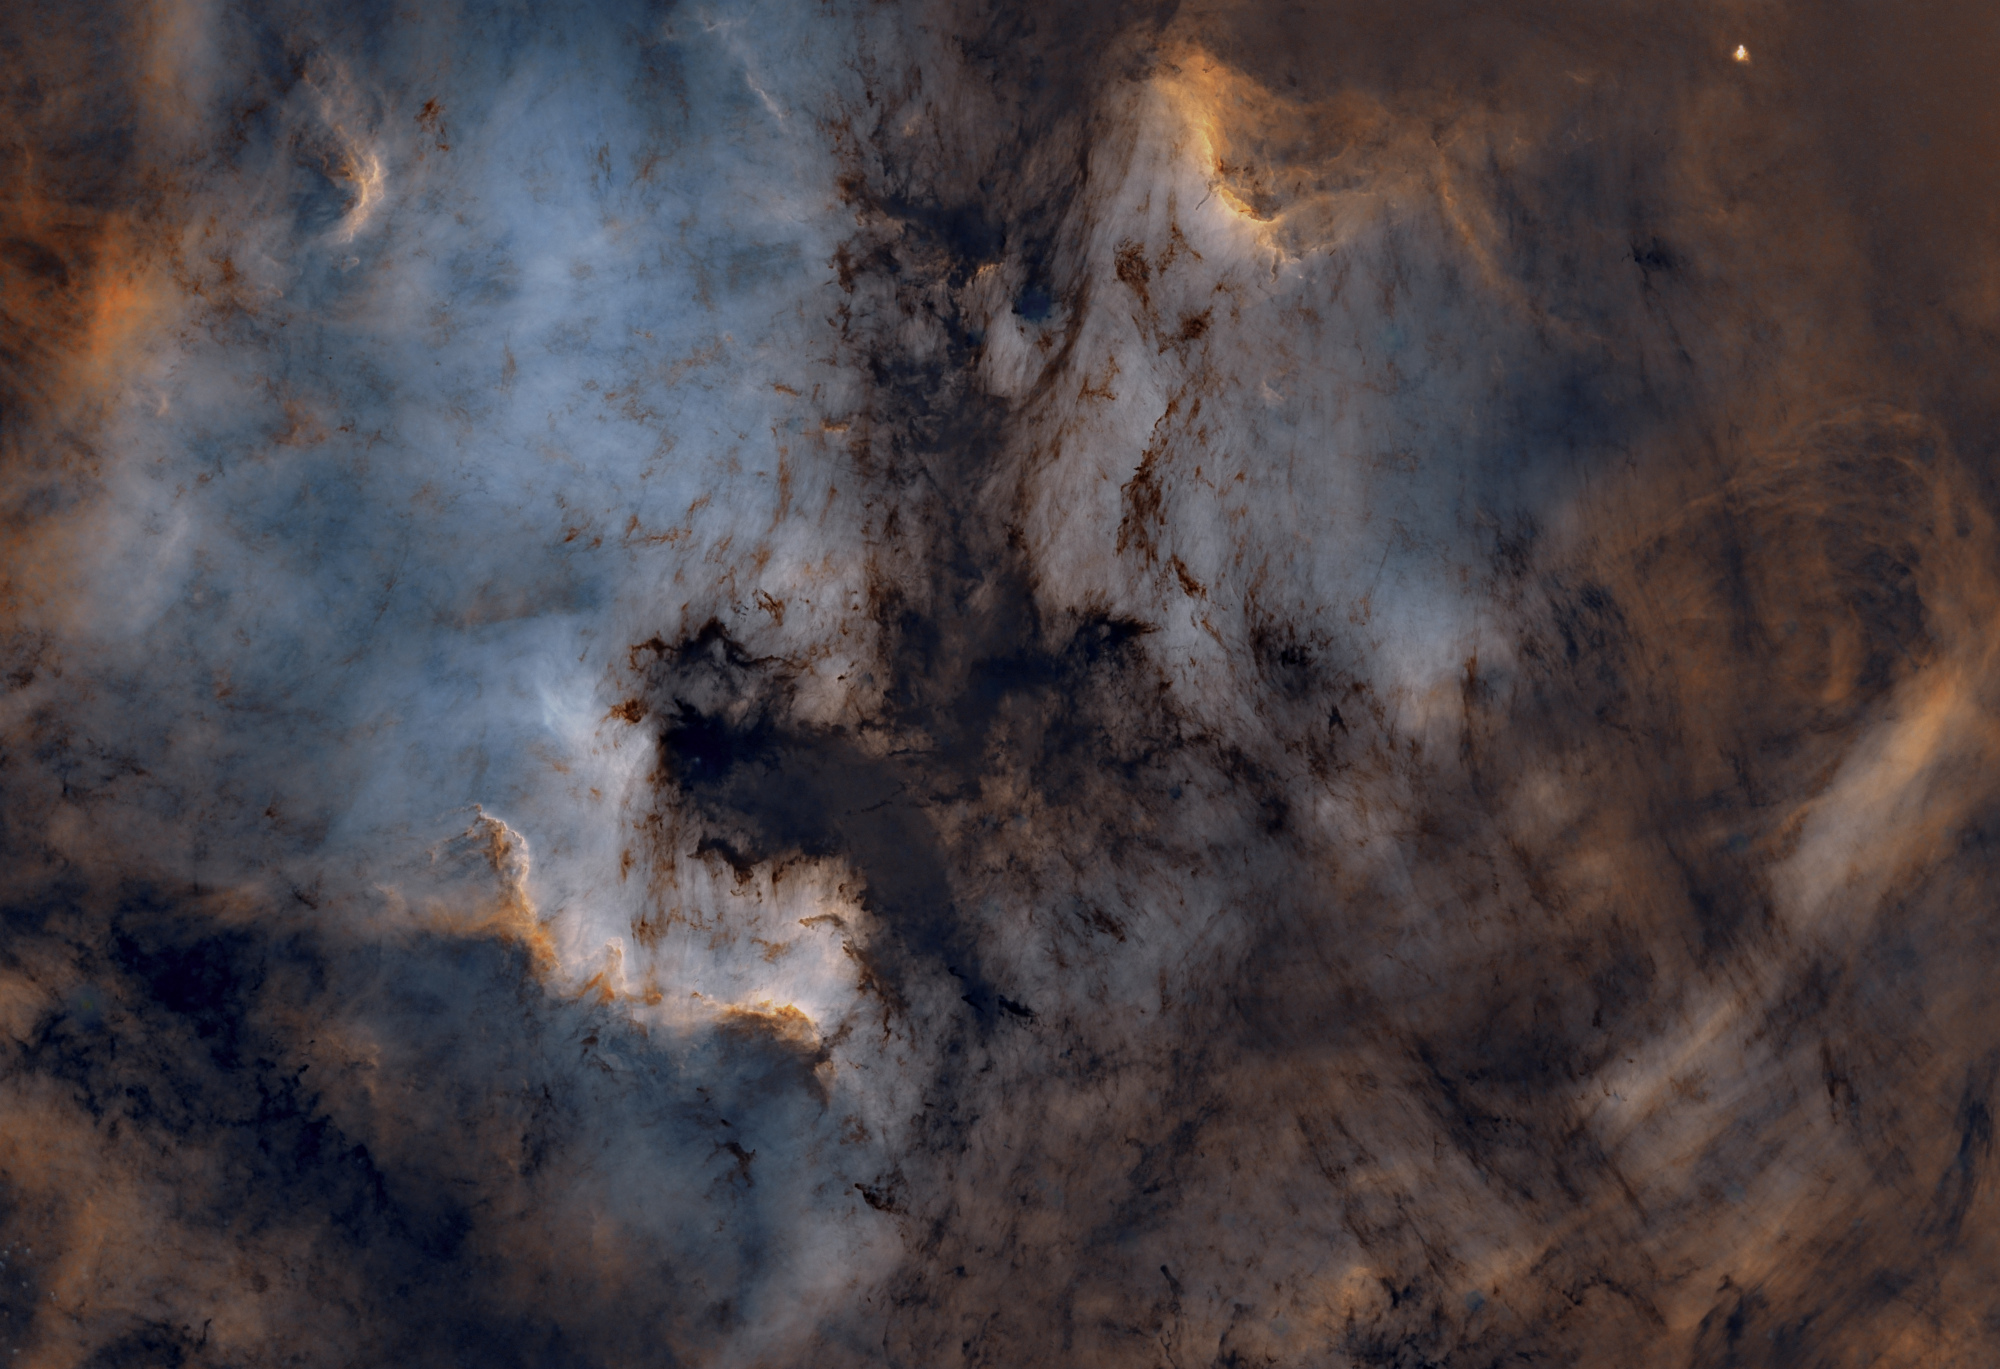 NGC7000-V1.thumb.jpg.8c125137cccaf4a71337ca8d6752f62c.jpg